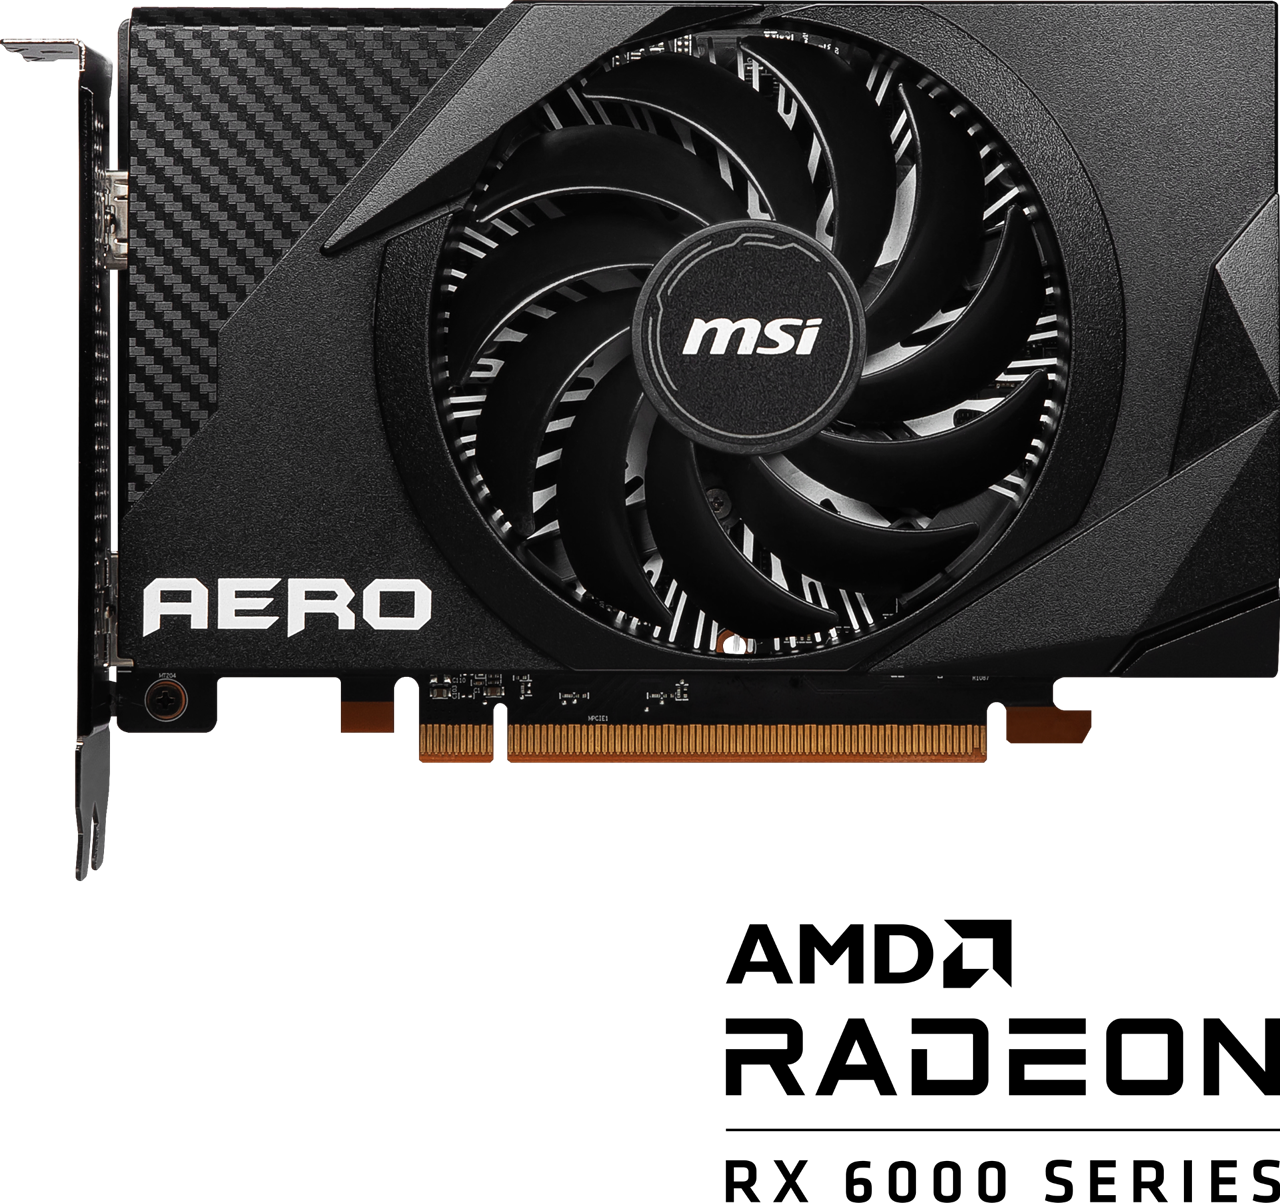 Premiera MSI AMD Radeon RX 6400 AERO ITX - AMD Radeon RX 6000 series